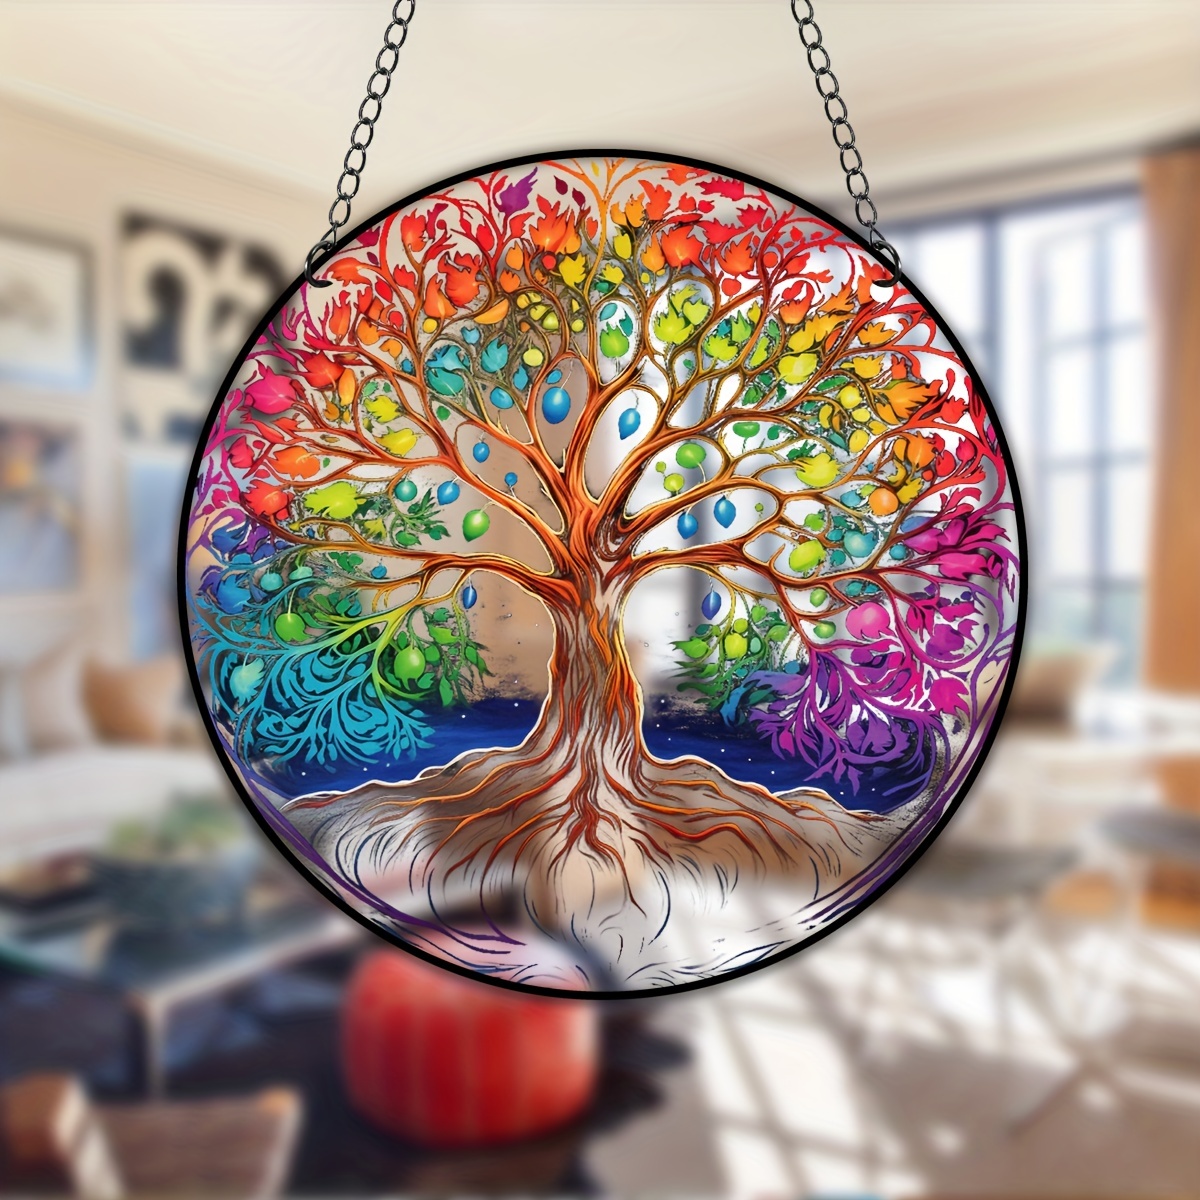 Attrape-soleil: un petit objet multicolore pour décorer nos fenêtres